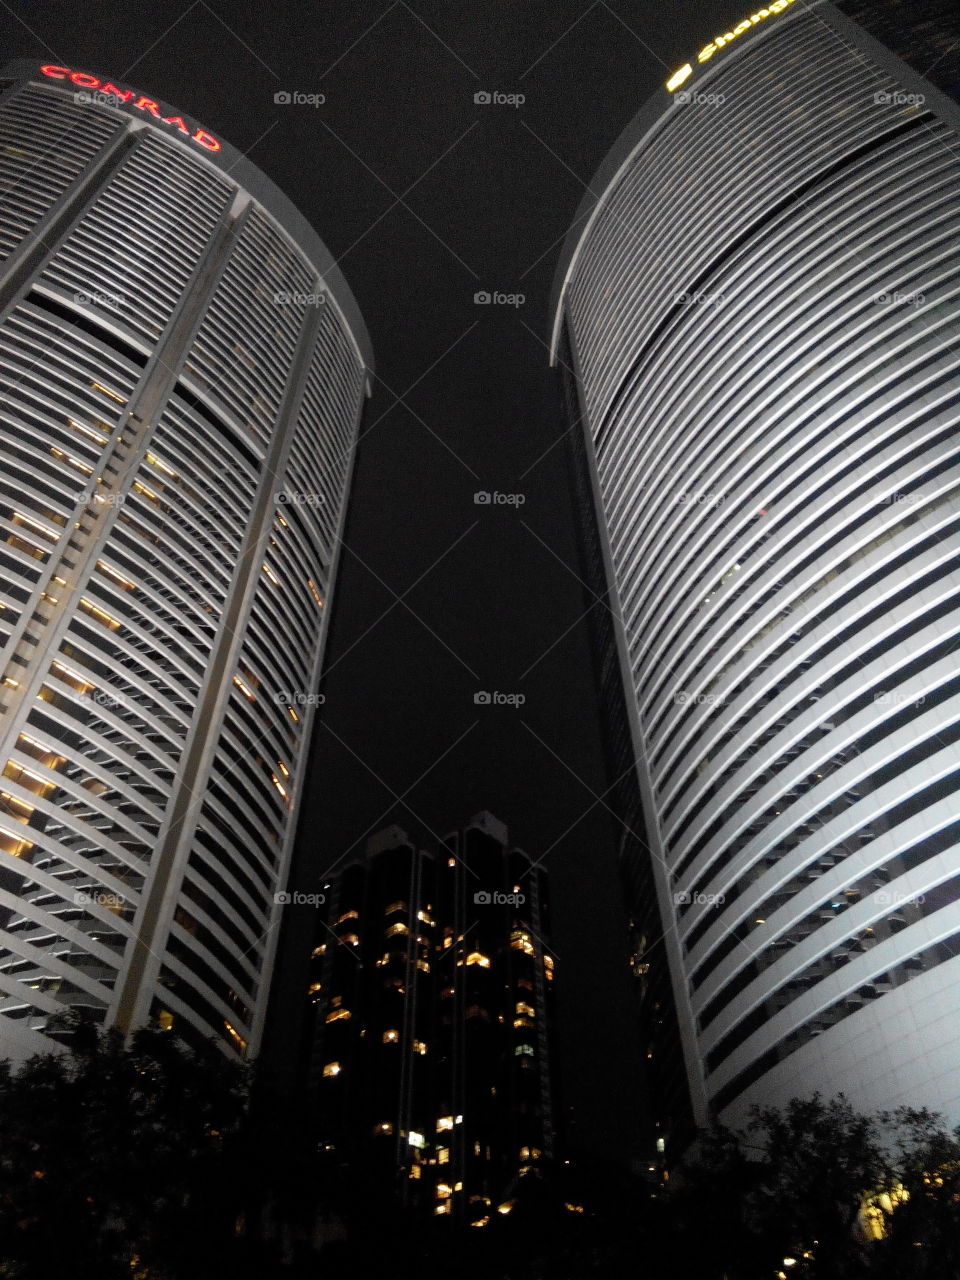 two skyskraper in Hong Kong